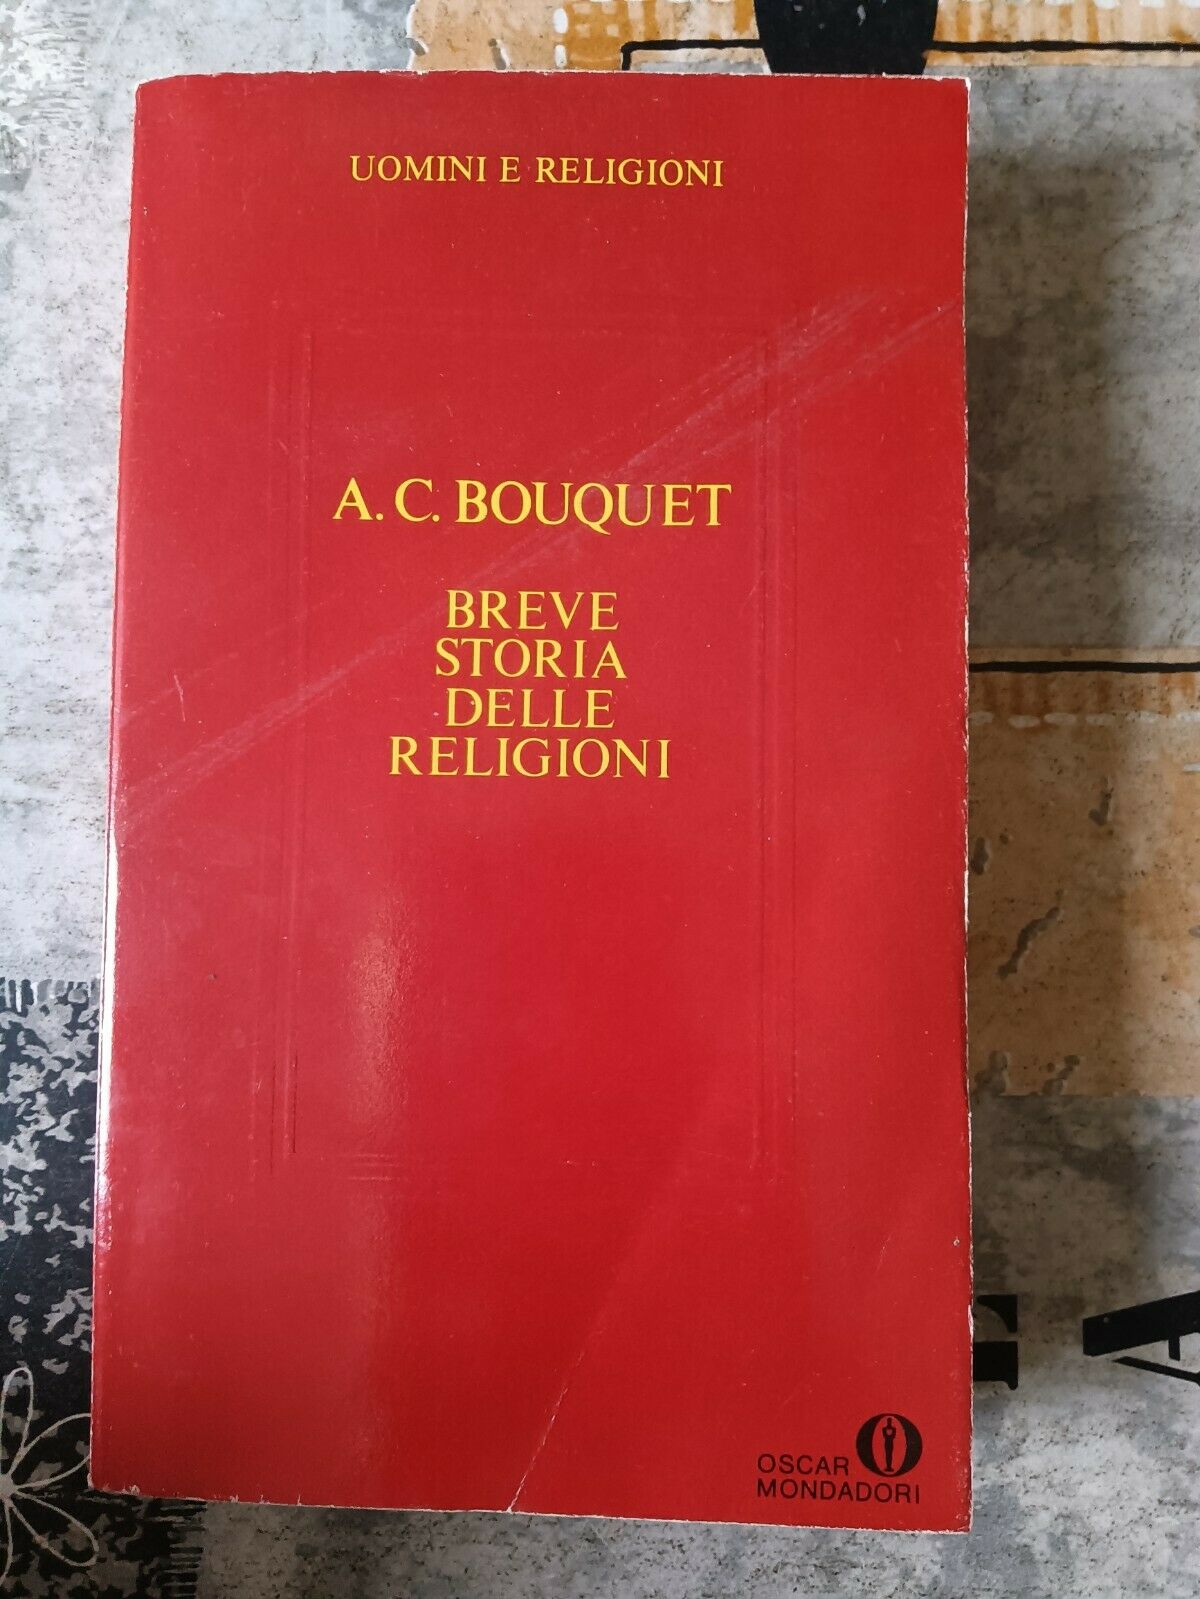 Breve storia delle religioni | A. C. Bouquet - Mondadori